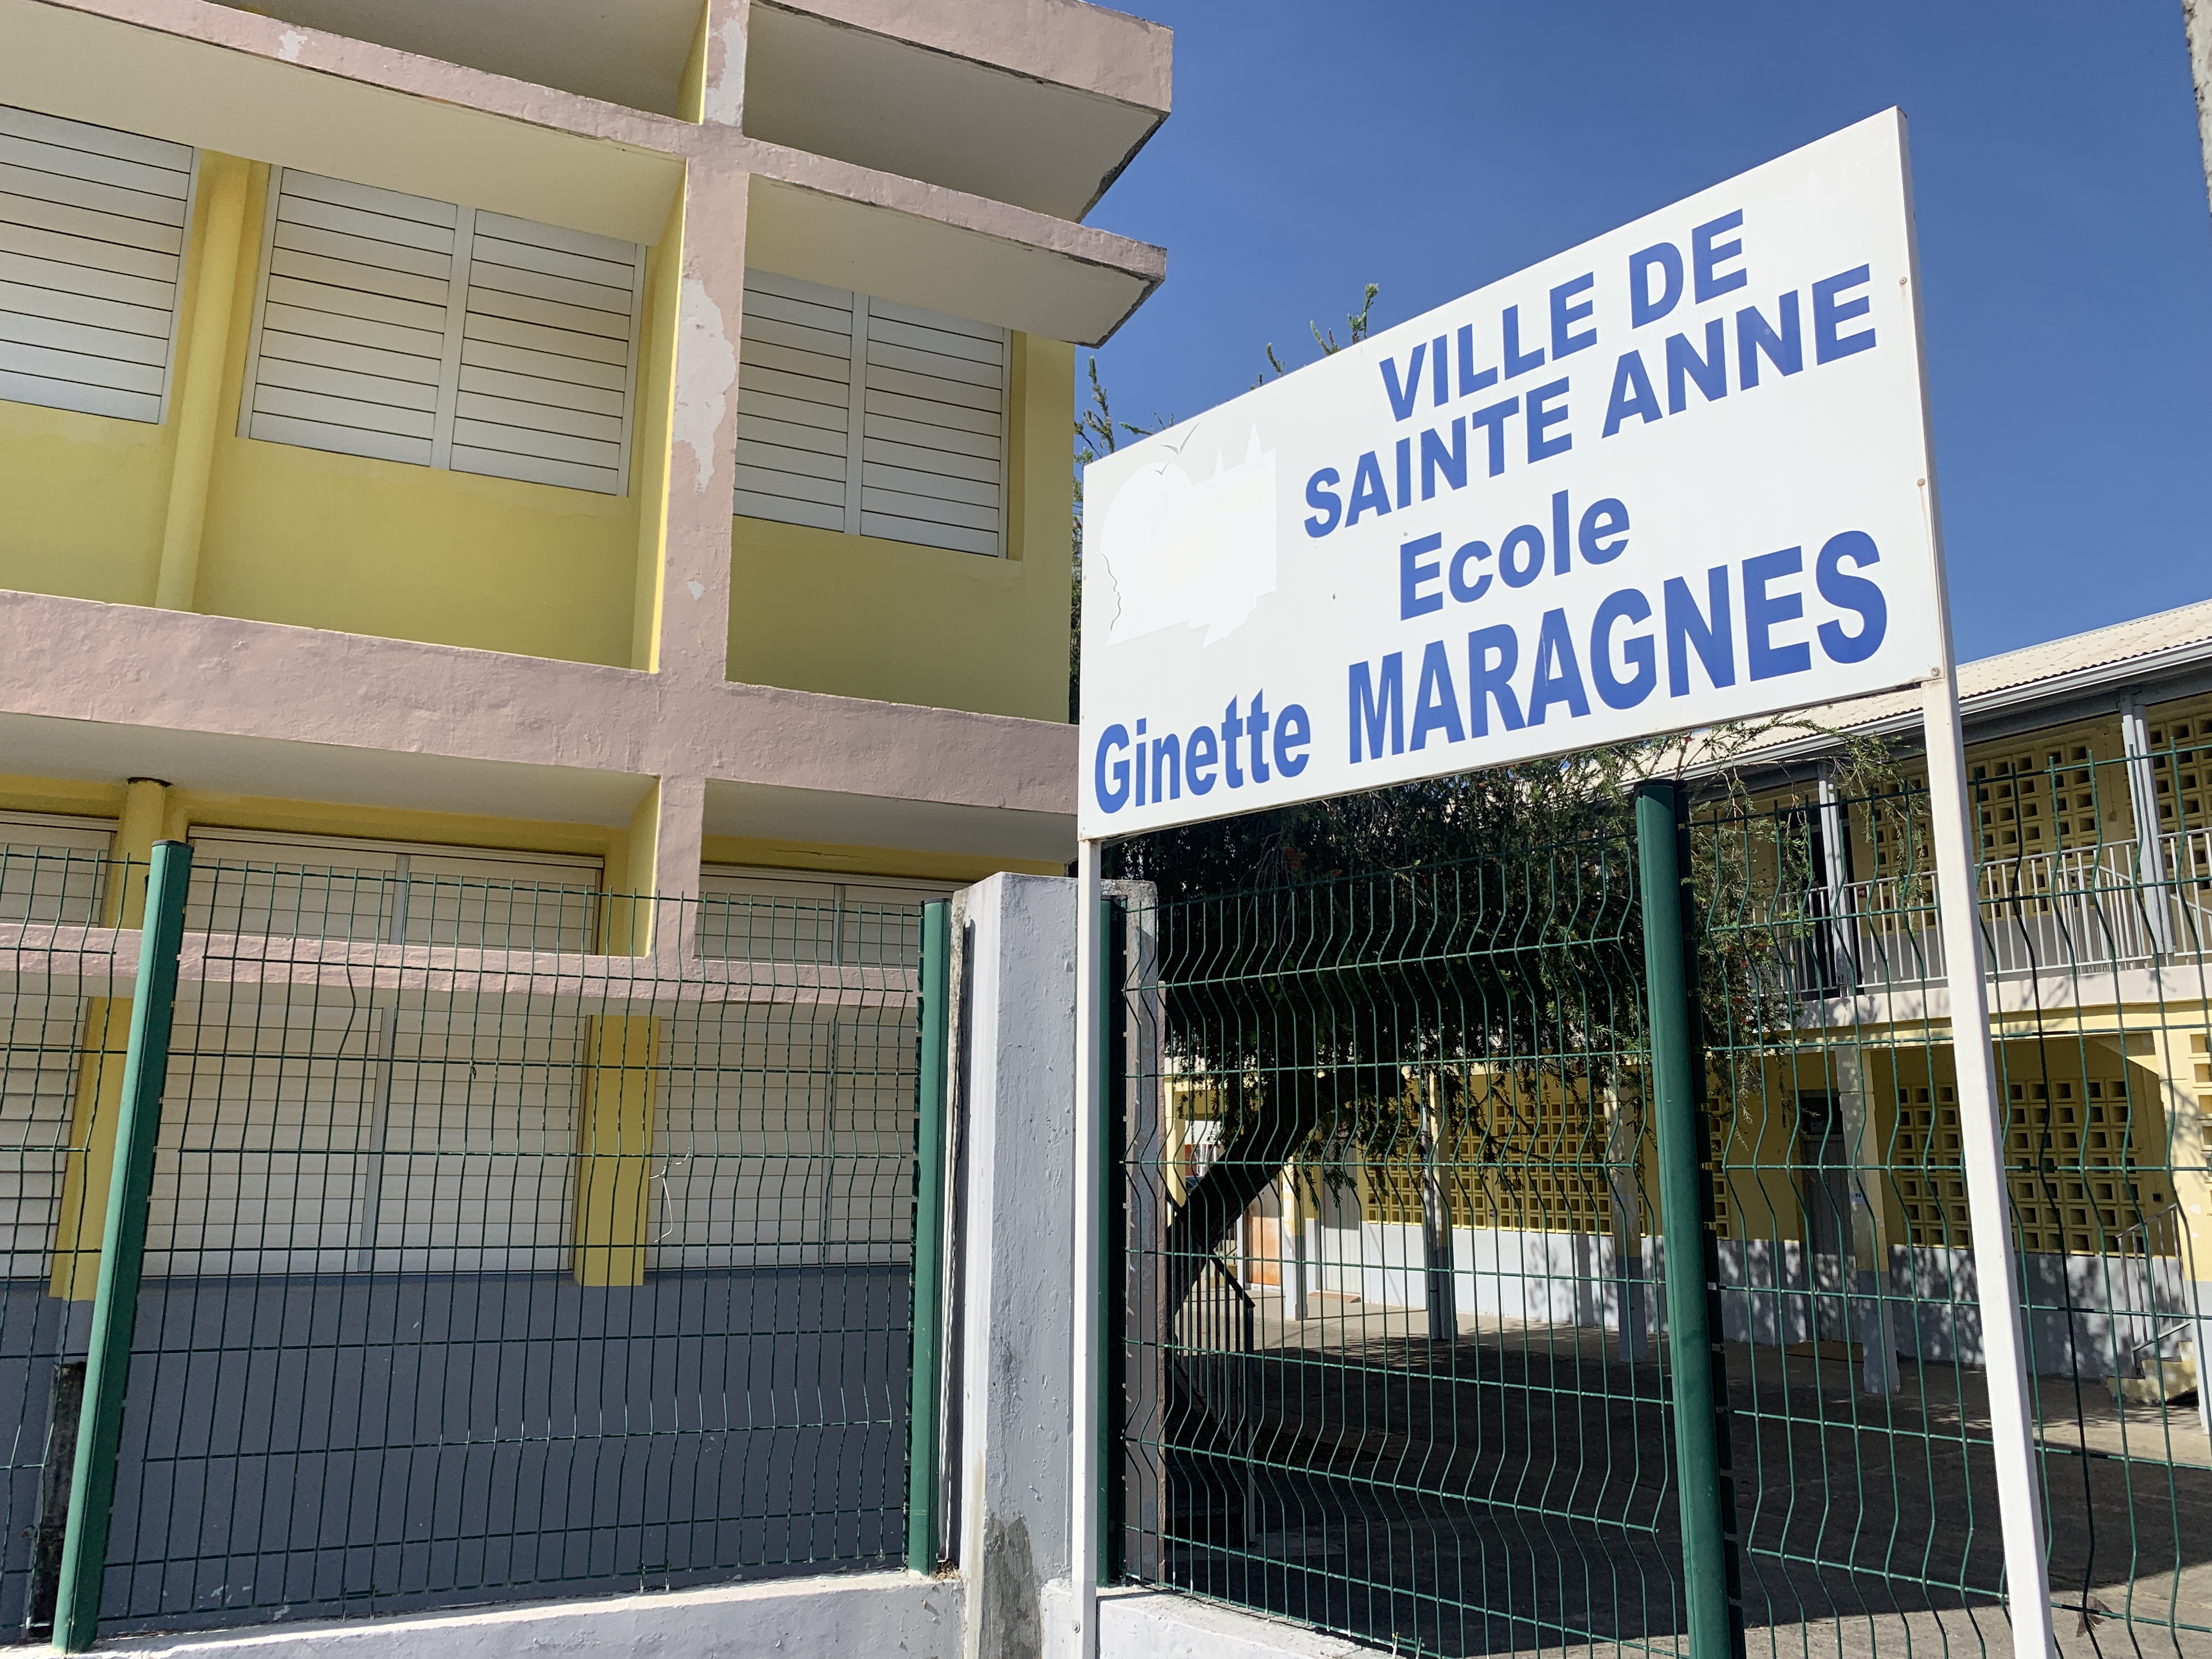     Sainte-Anne : l'école Ginette Maragnes accueille les enfants des personnels soignants

